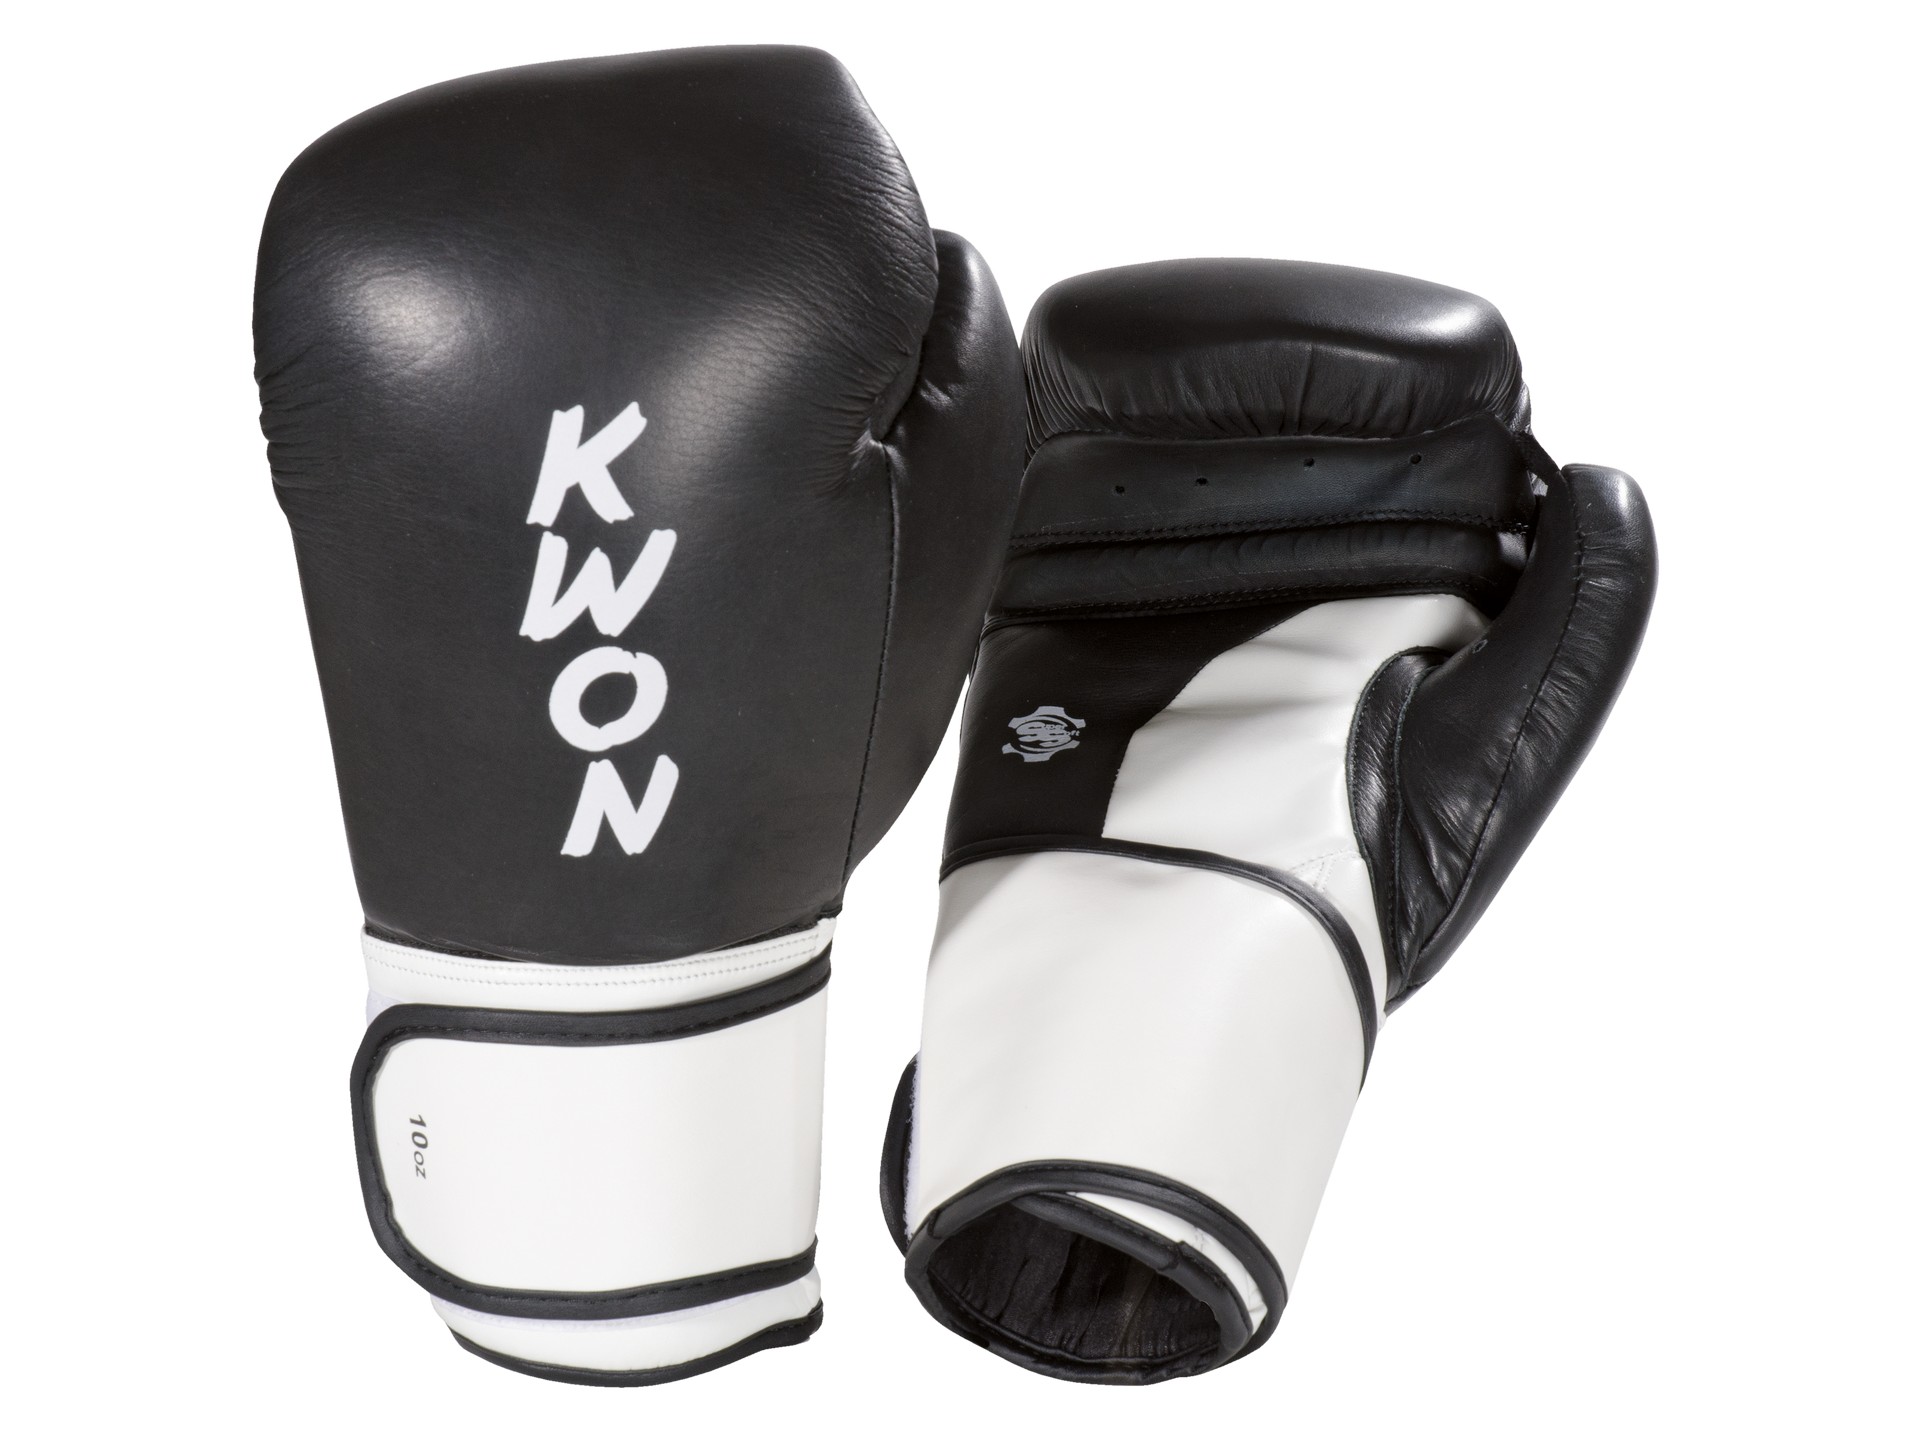 Wettkampfhandschuhe Boxhandschuhe Super Champ anerkannt | | WKU Kickboxen - Boxen KWON Thai